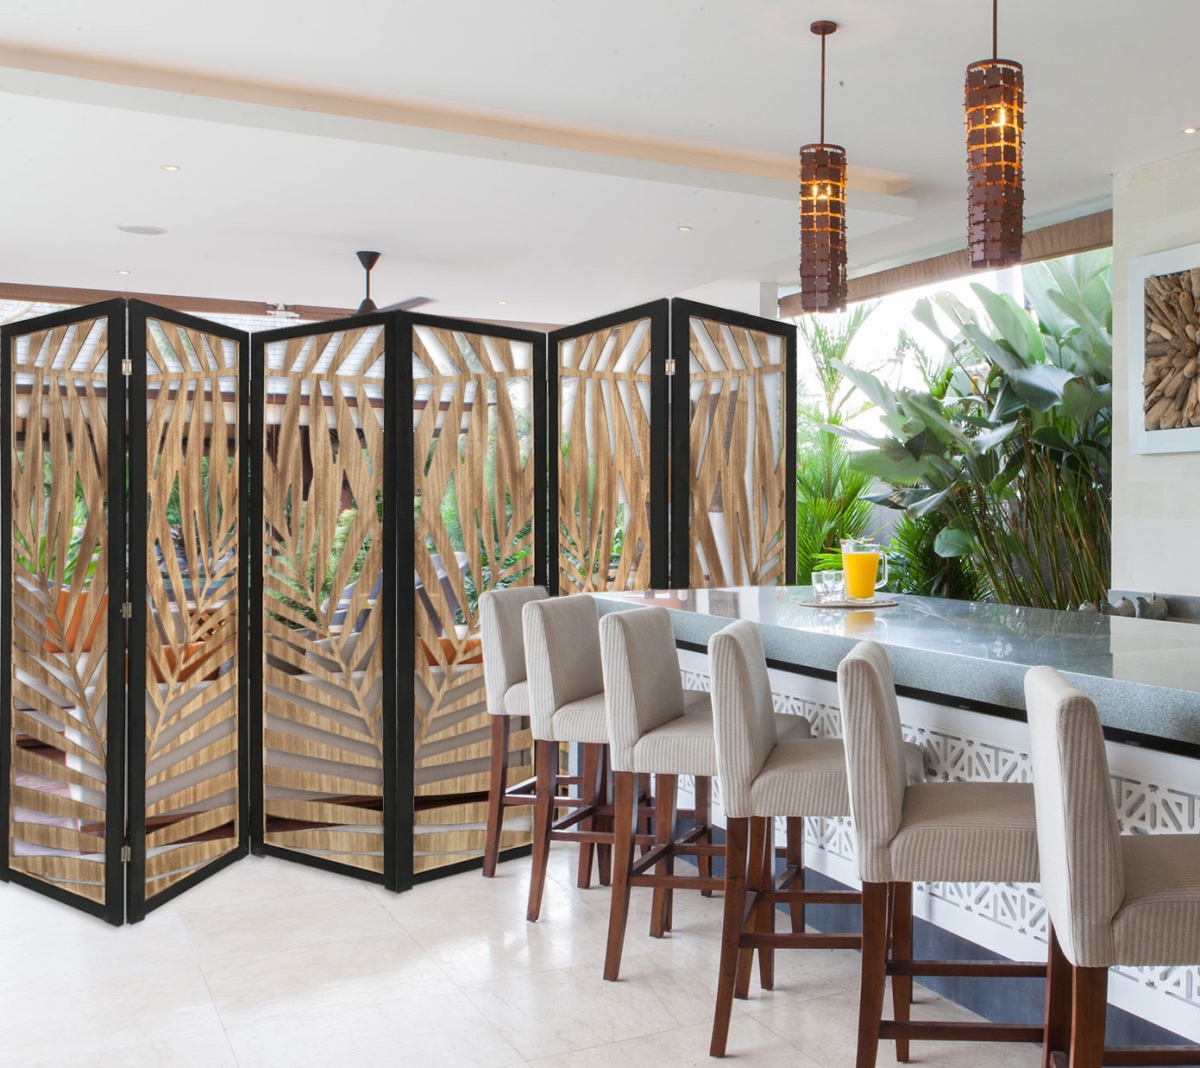 376792 3 Panel Room Divider With Tropical Leaf Design